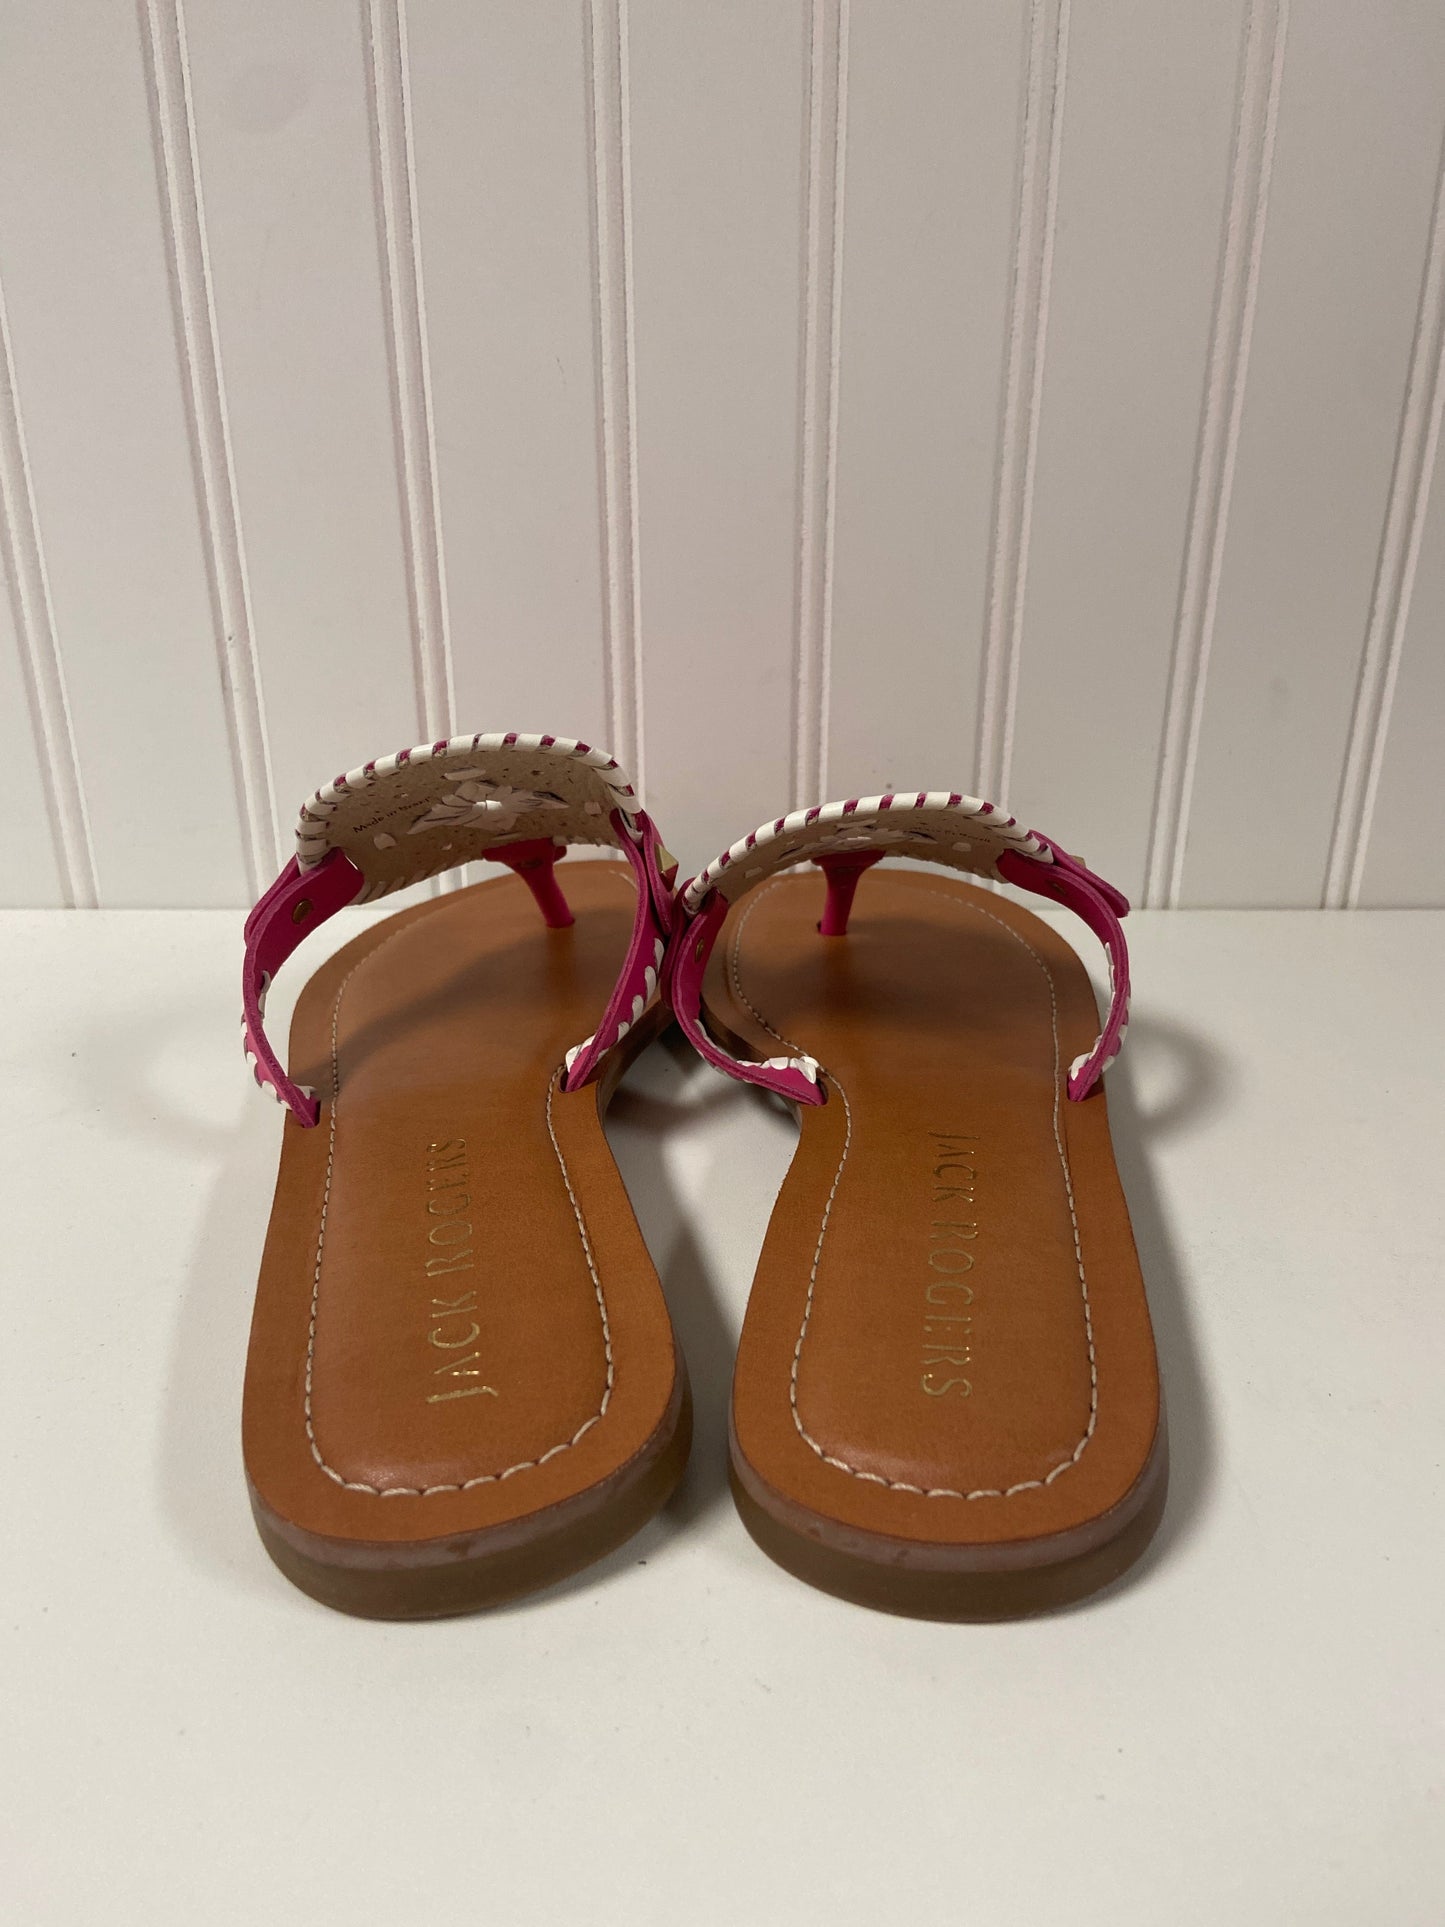 Brown & Pink Sandals Flip Flops Jack Rogers, Size 8.5